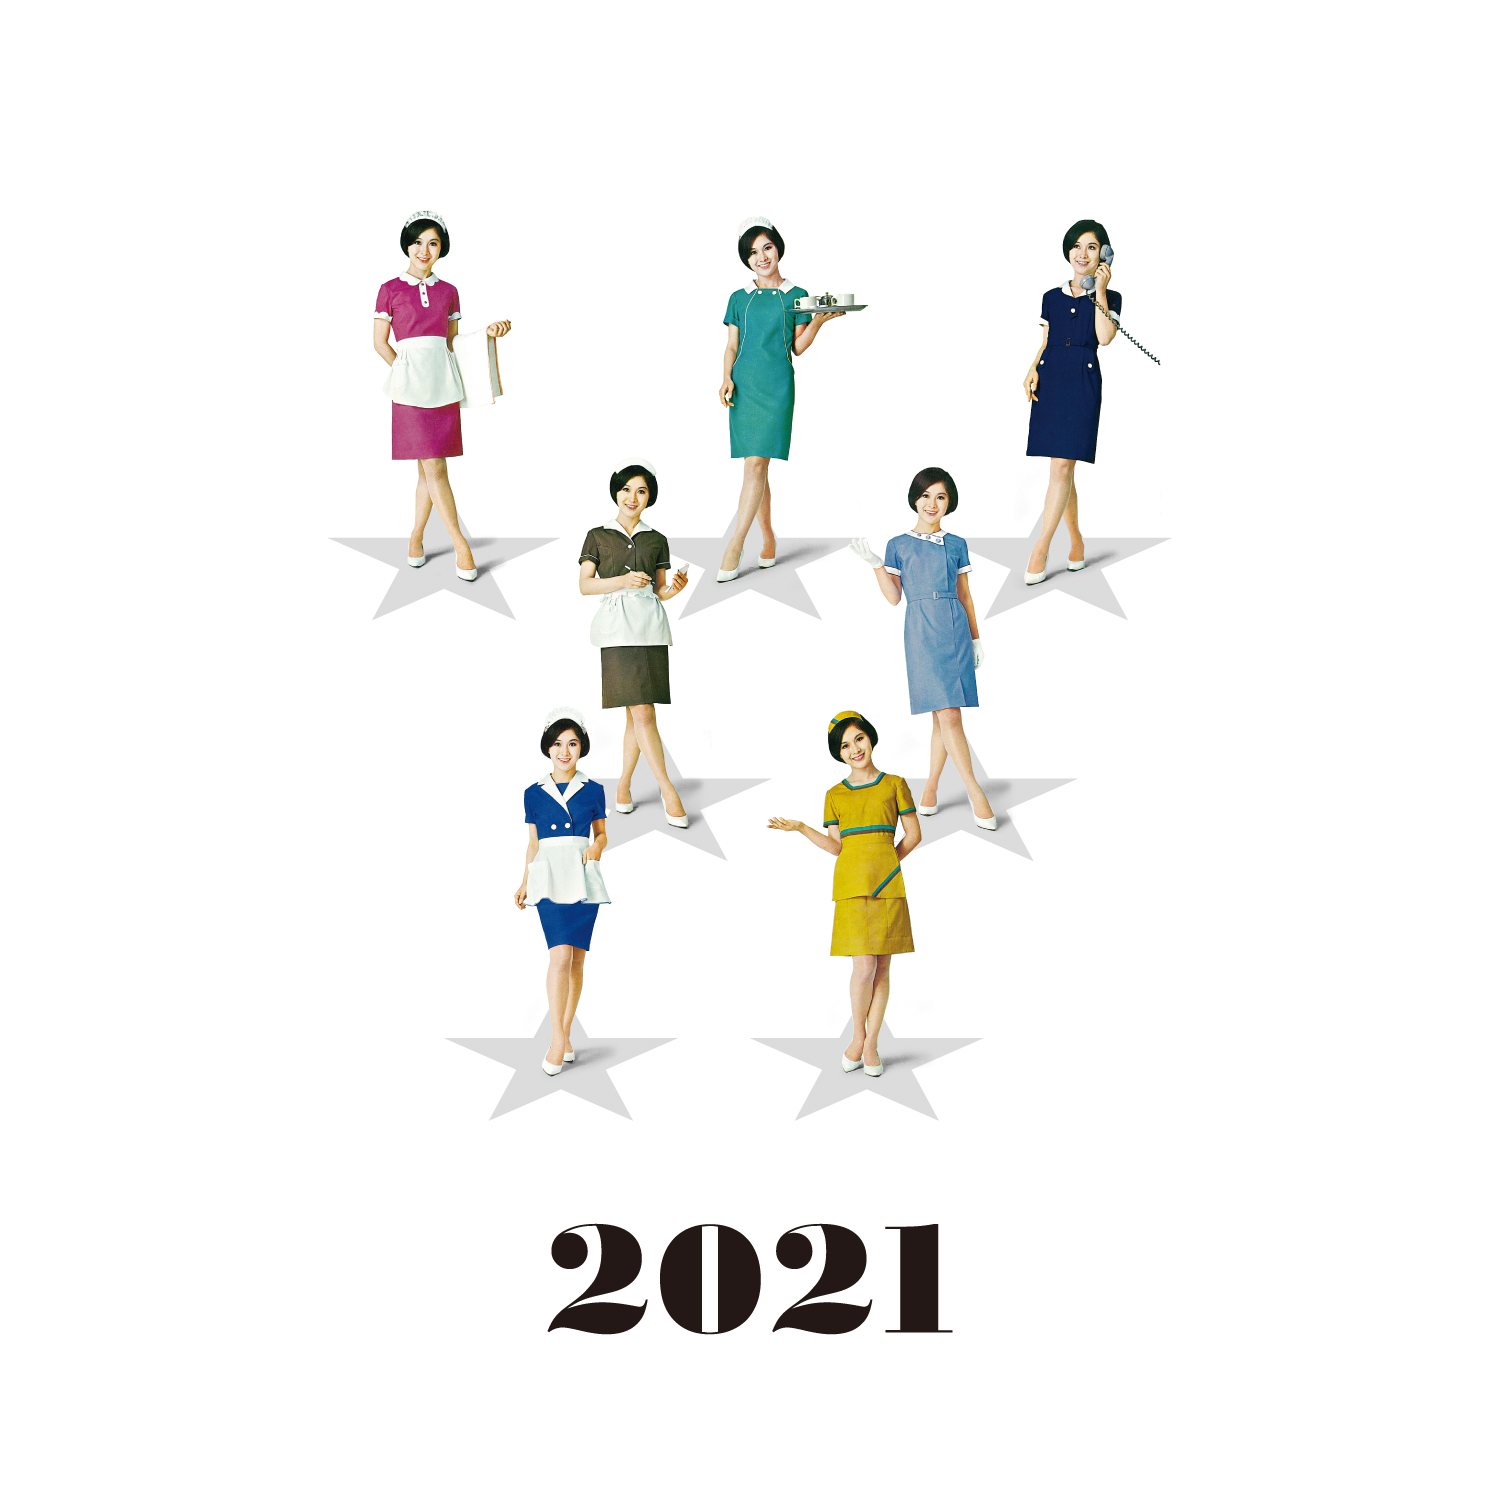 セブンユニフォーム 横山町店 本年の年始ご挨拶のイラストは 1963年に発表した業界初の既製服 セブンウェアー です セブンウェアーは好評を博し セブンさん の愛称で呼ばれるように Seven Uniform ブランドはそこから生まれました セブン